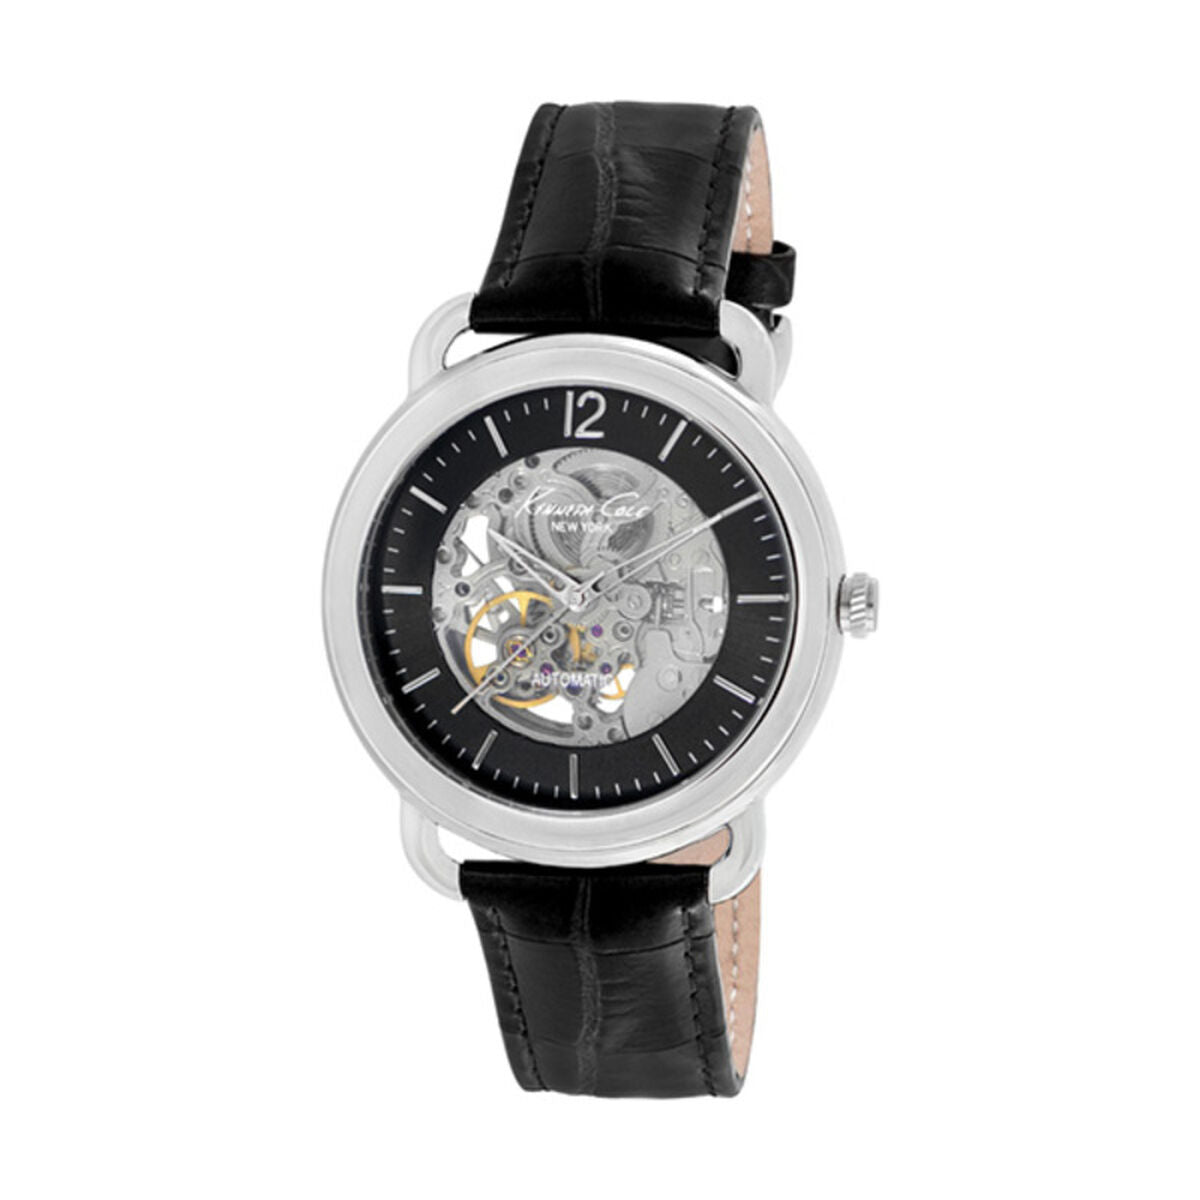 Horloge Heren Kenneth Cole IKC8017 (Ø 43 mm)